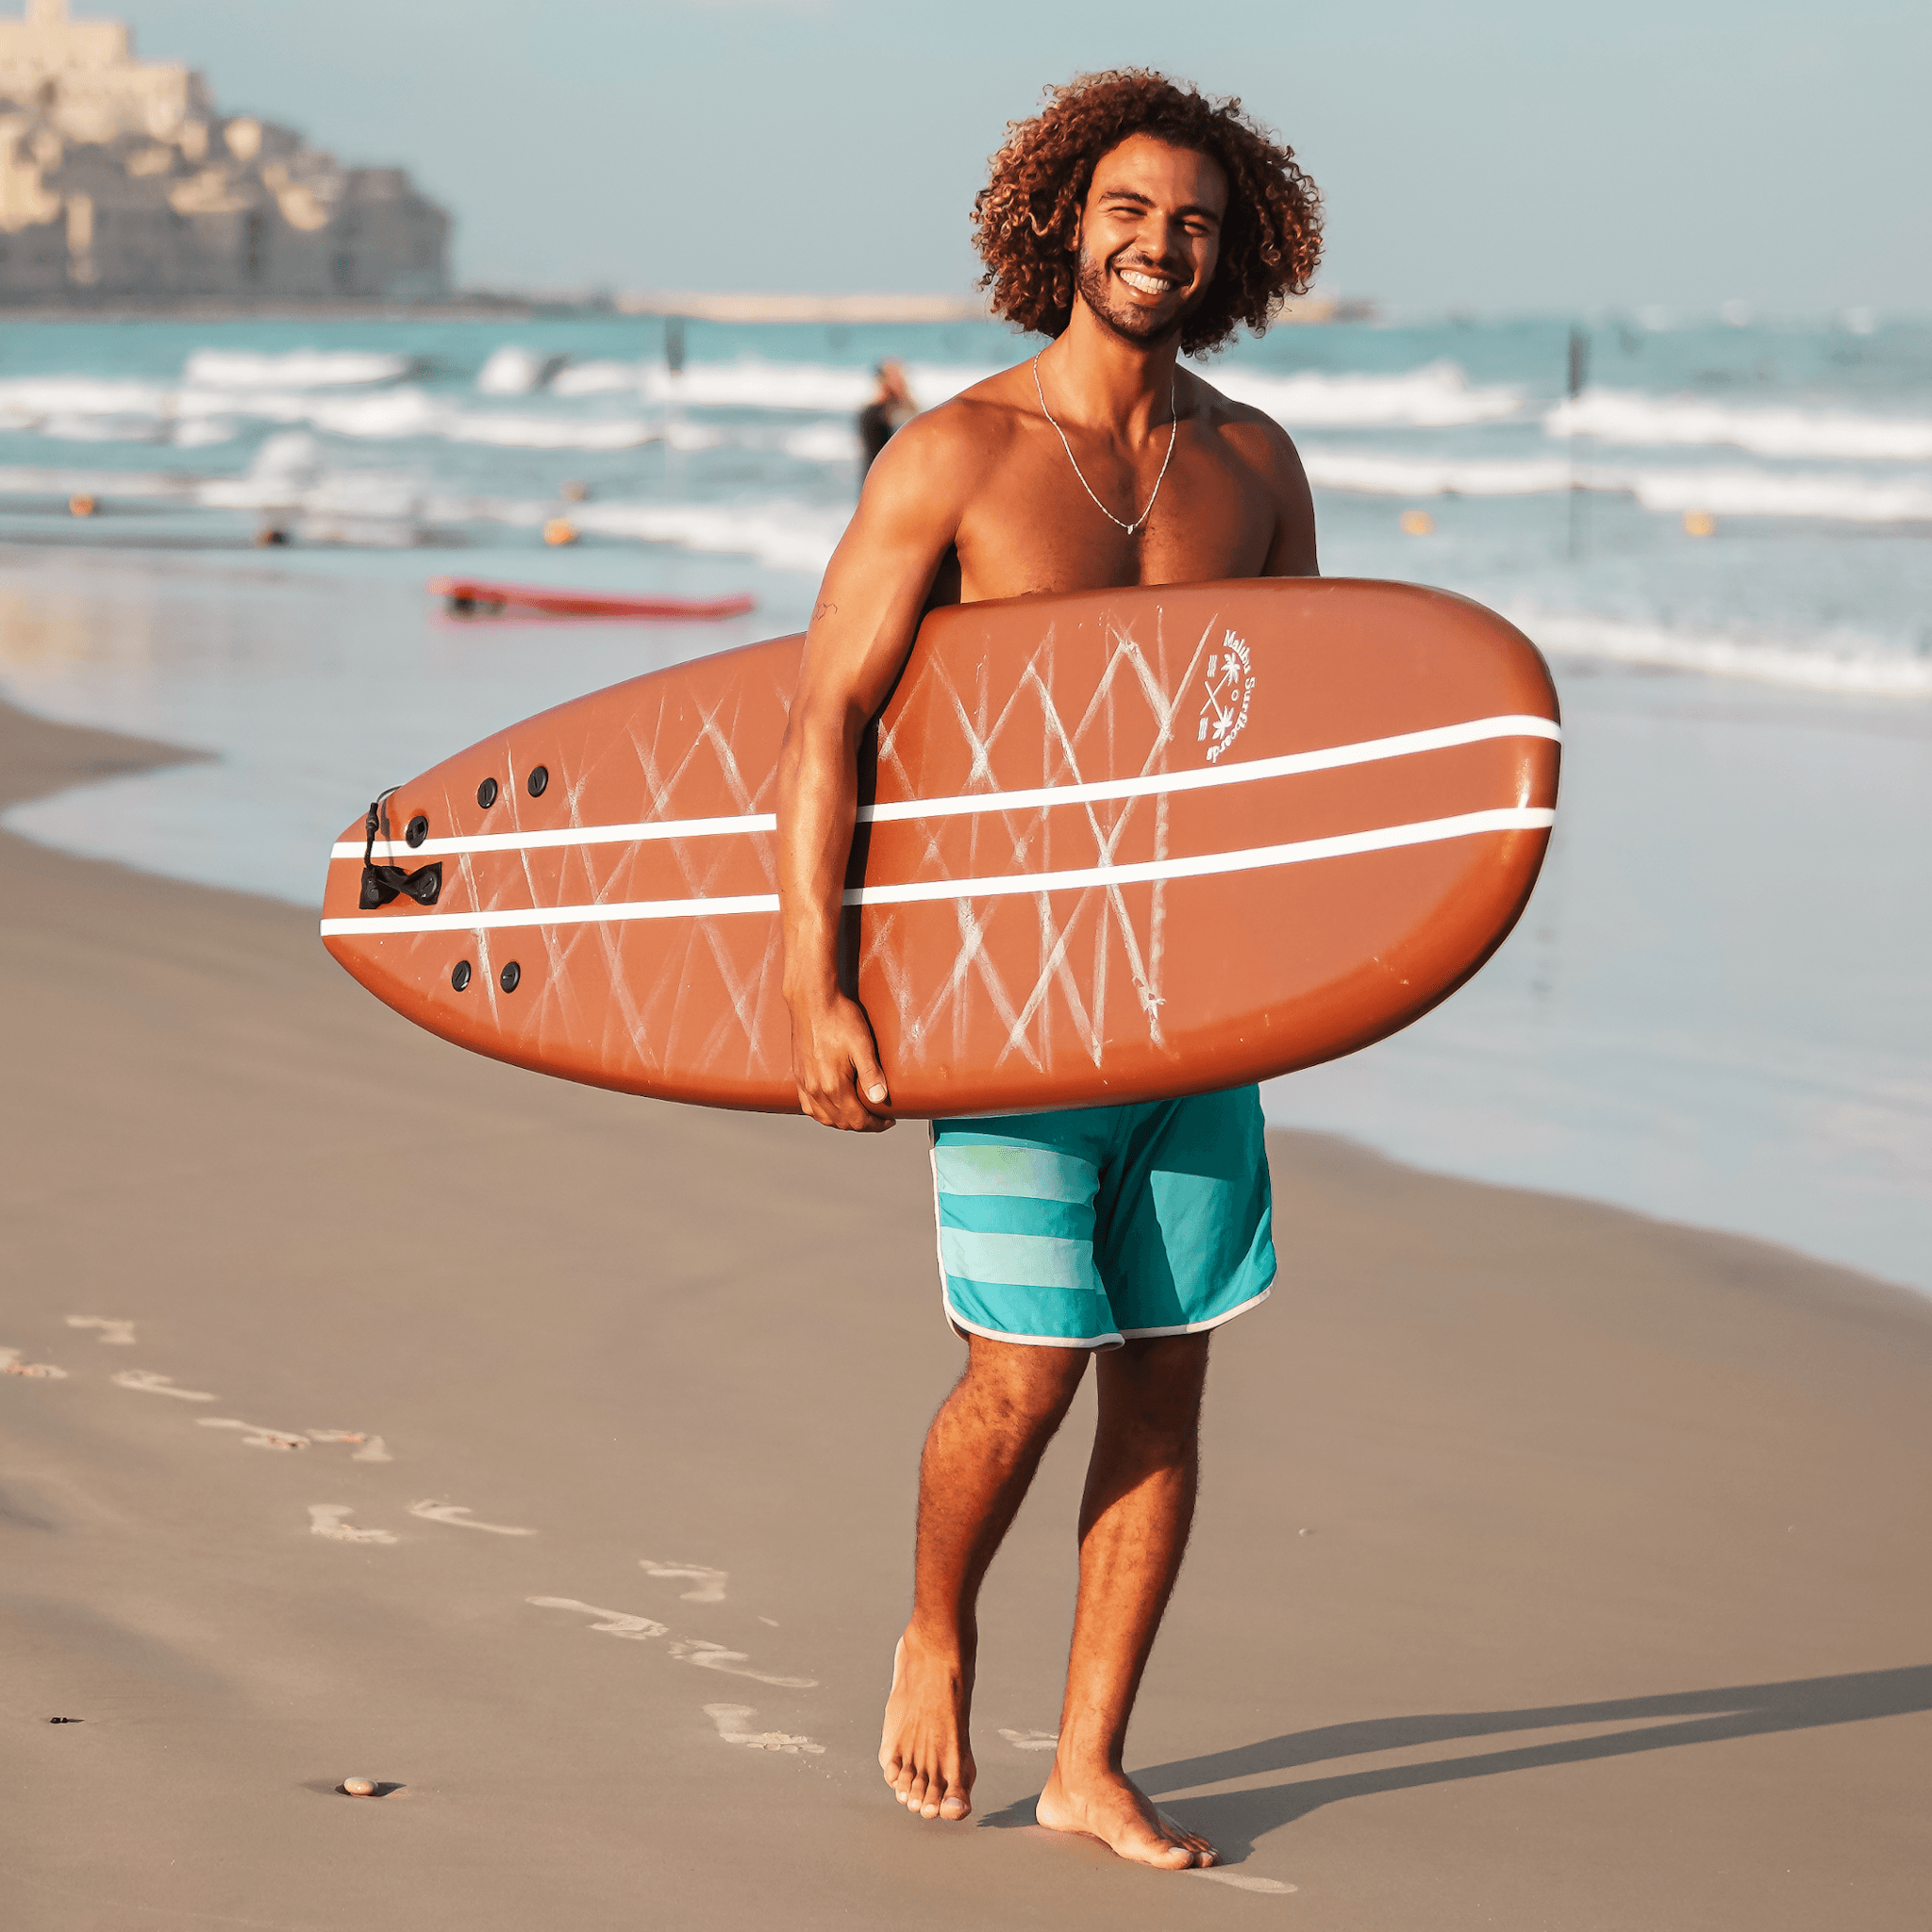 חום שוקולד - Malibu Surfboards TLV